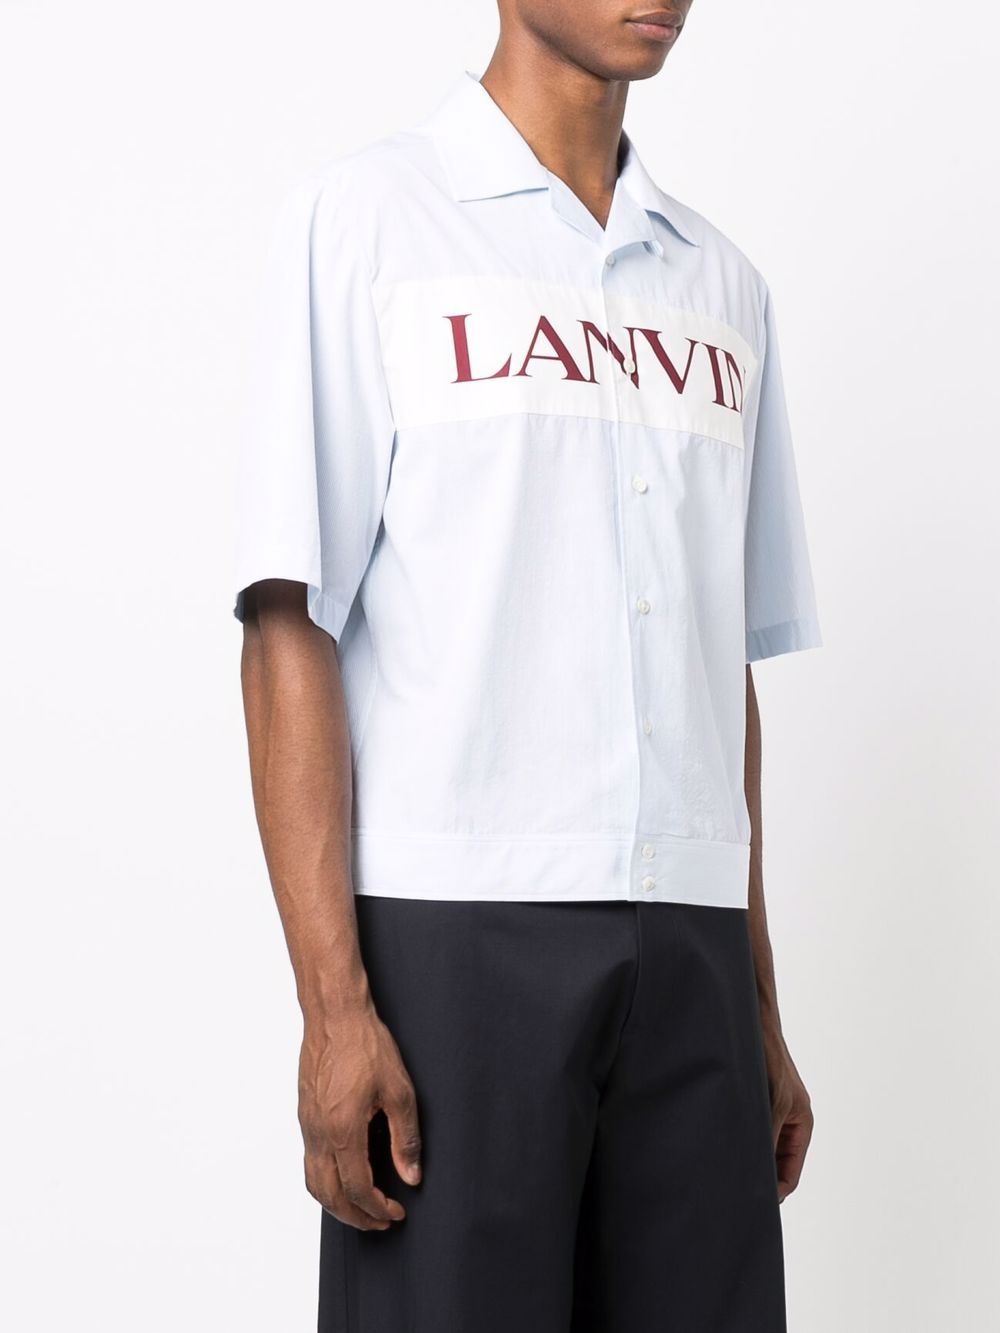 фото Lanvin рубашка с короткими рукавами и логотипом